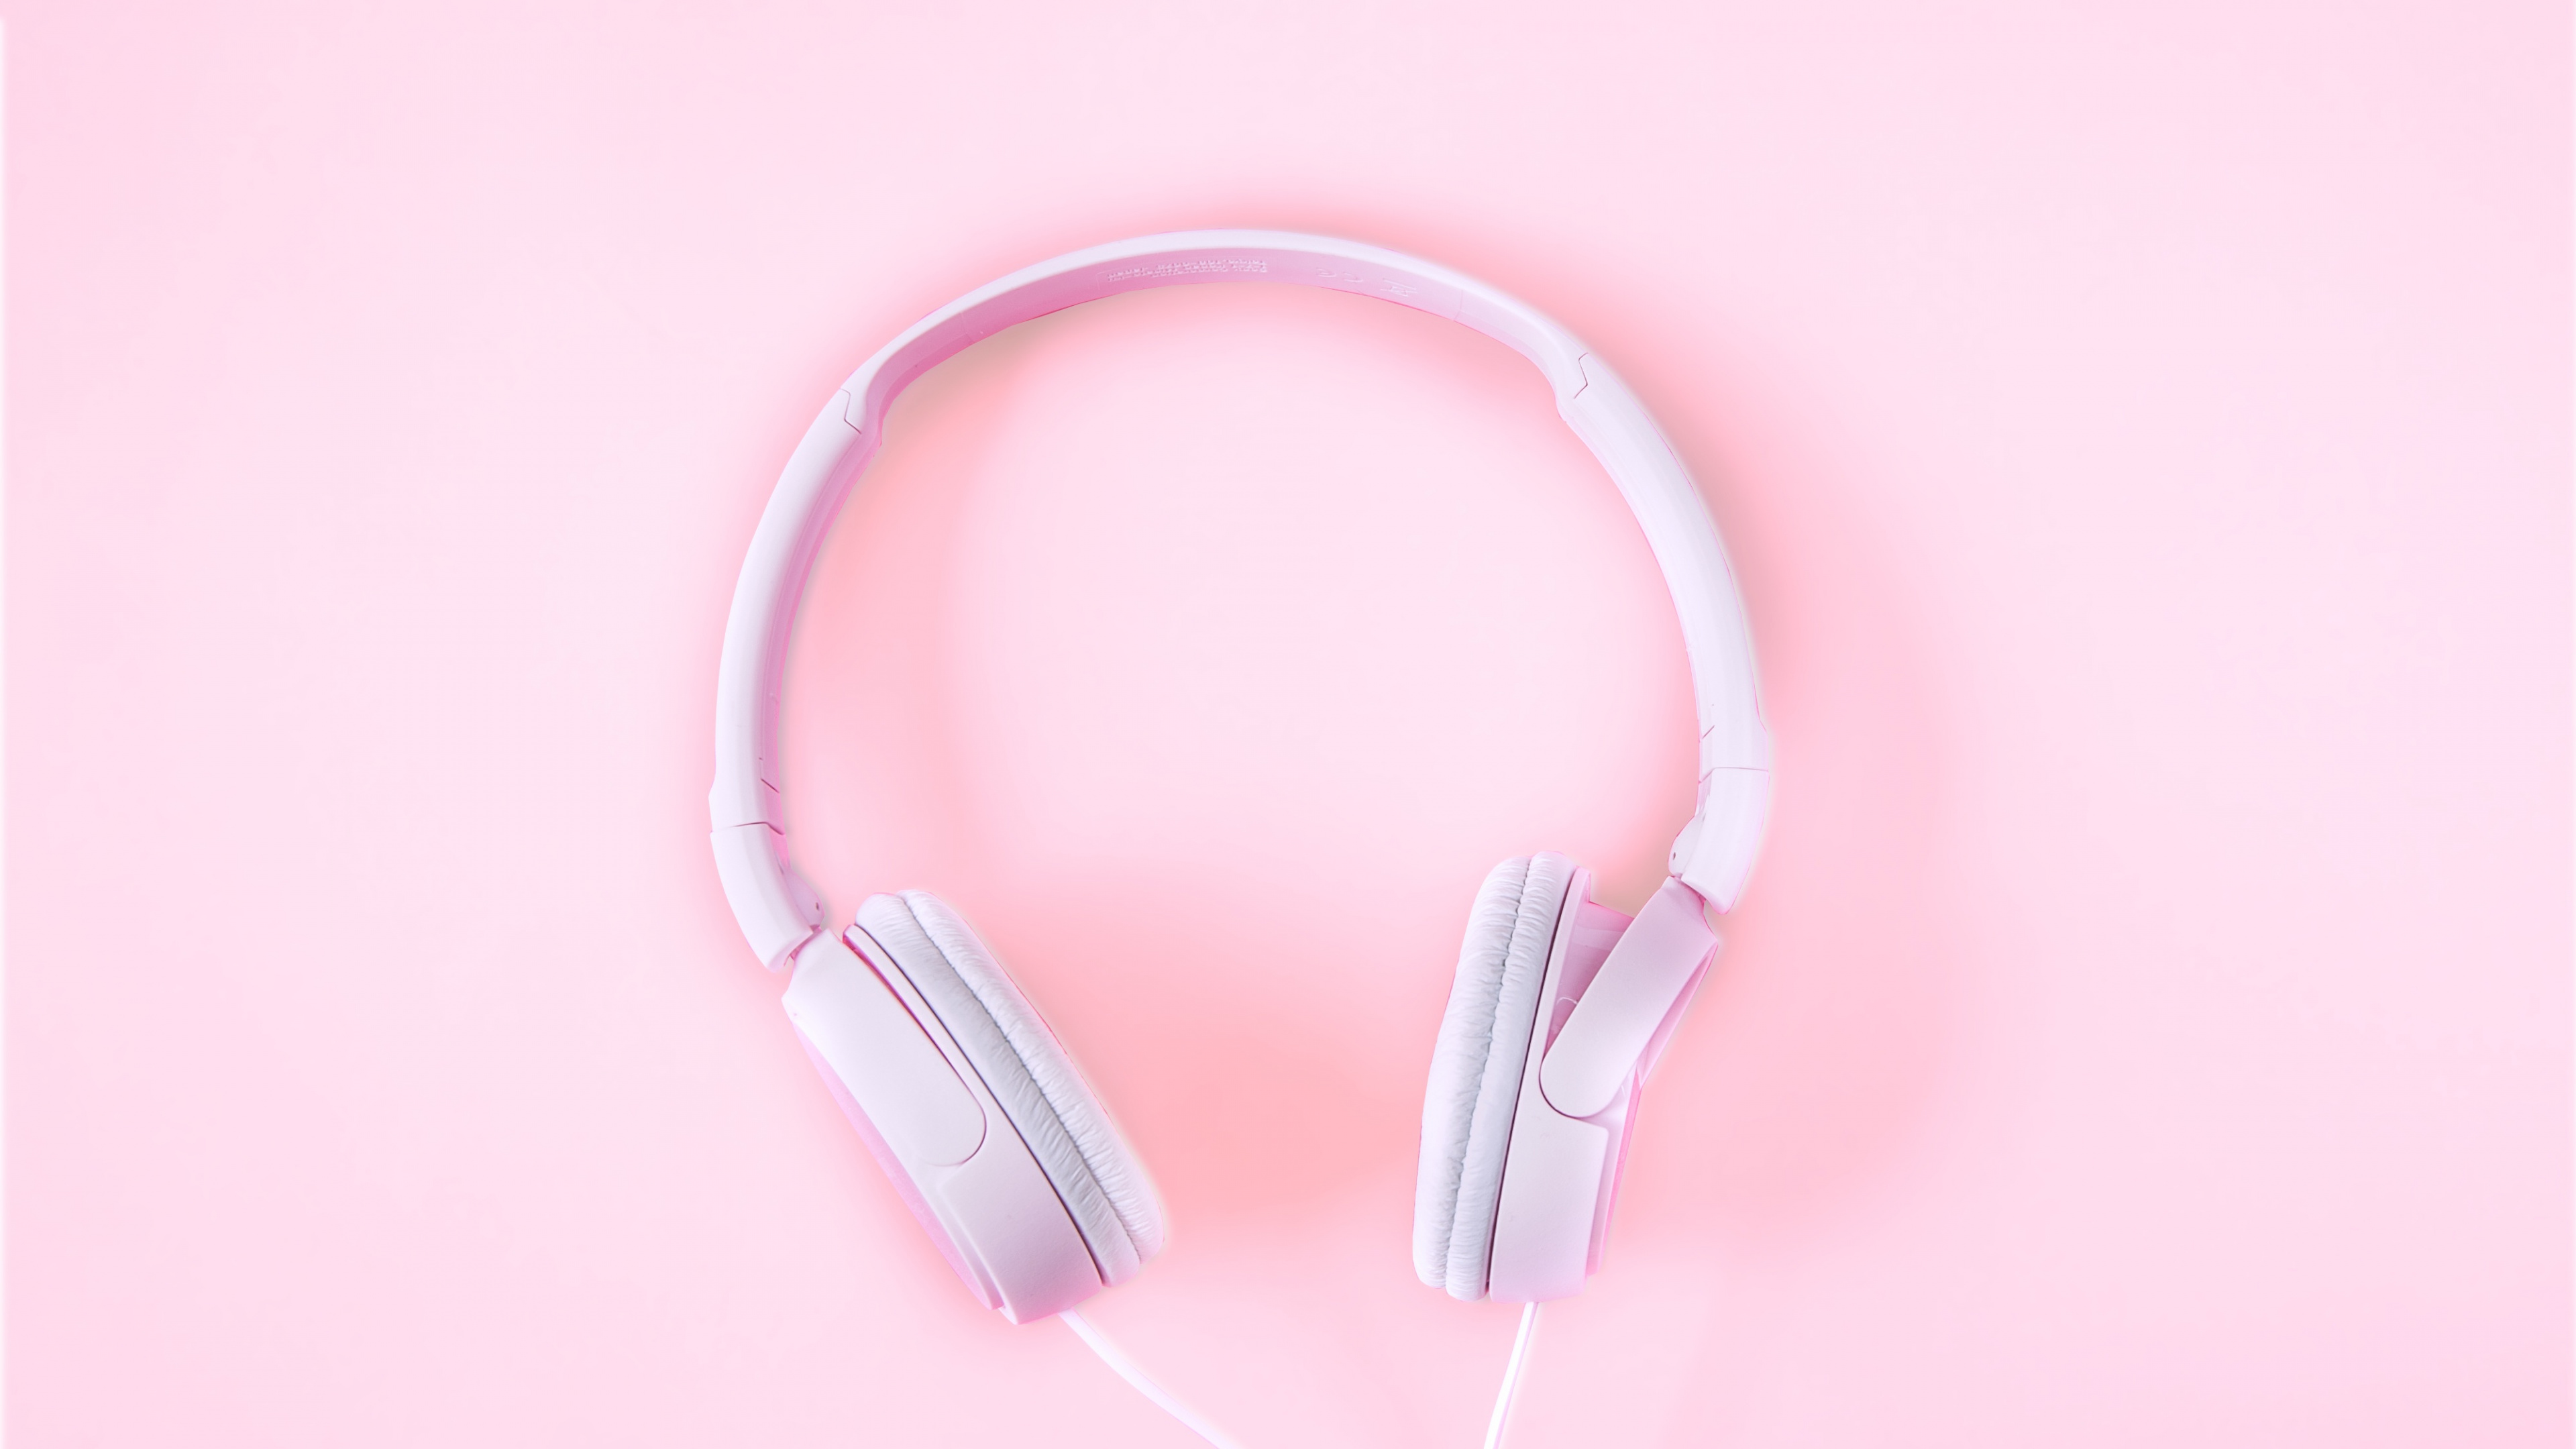 Kopfhörer, Pink, Audiogeräten, Gadget, Ohr. Wallpaper in 3840x2160 Resolution